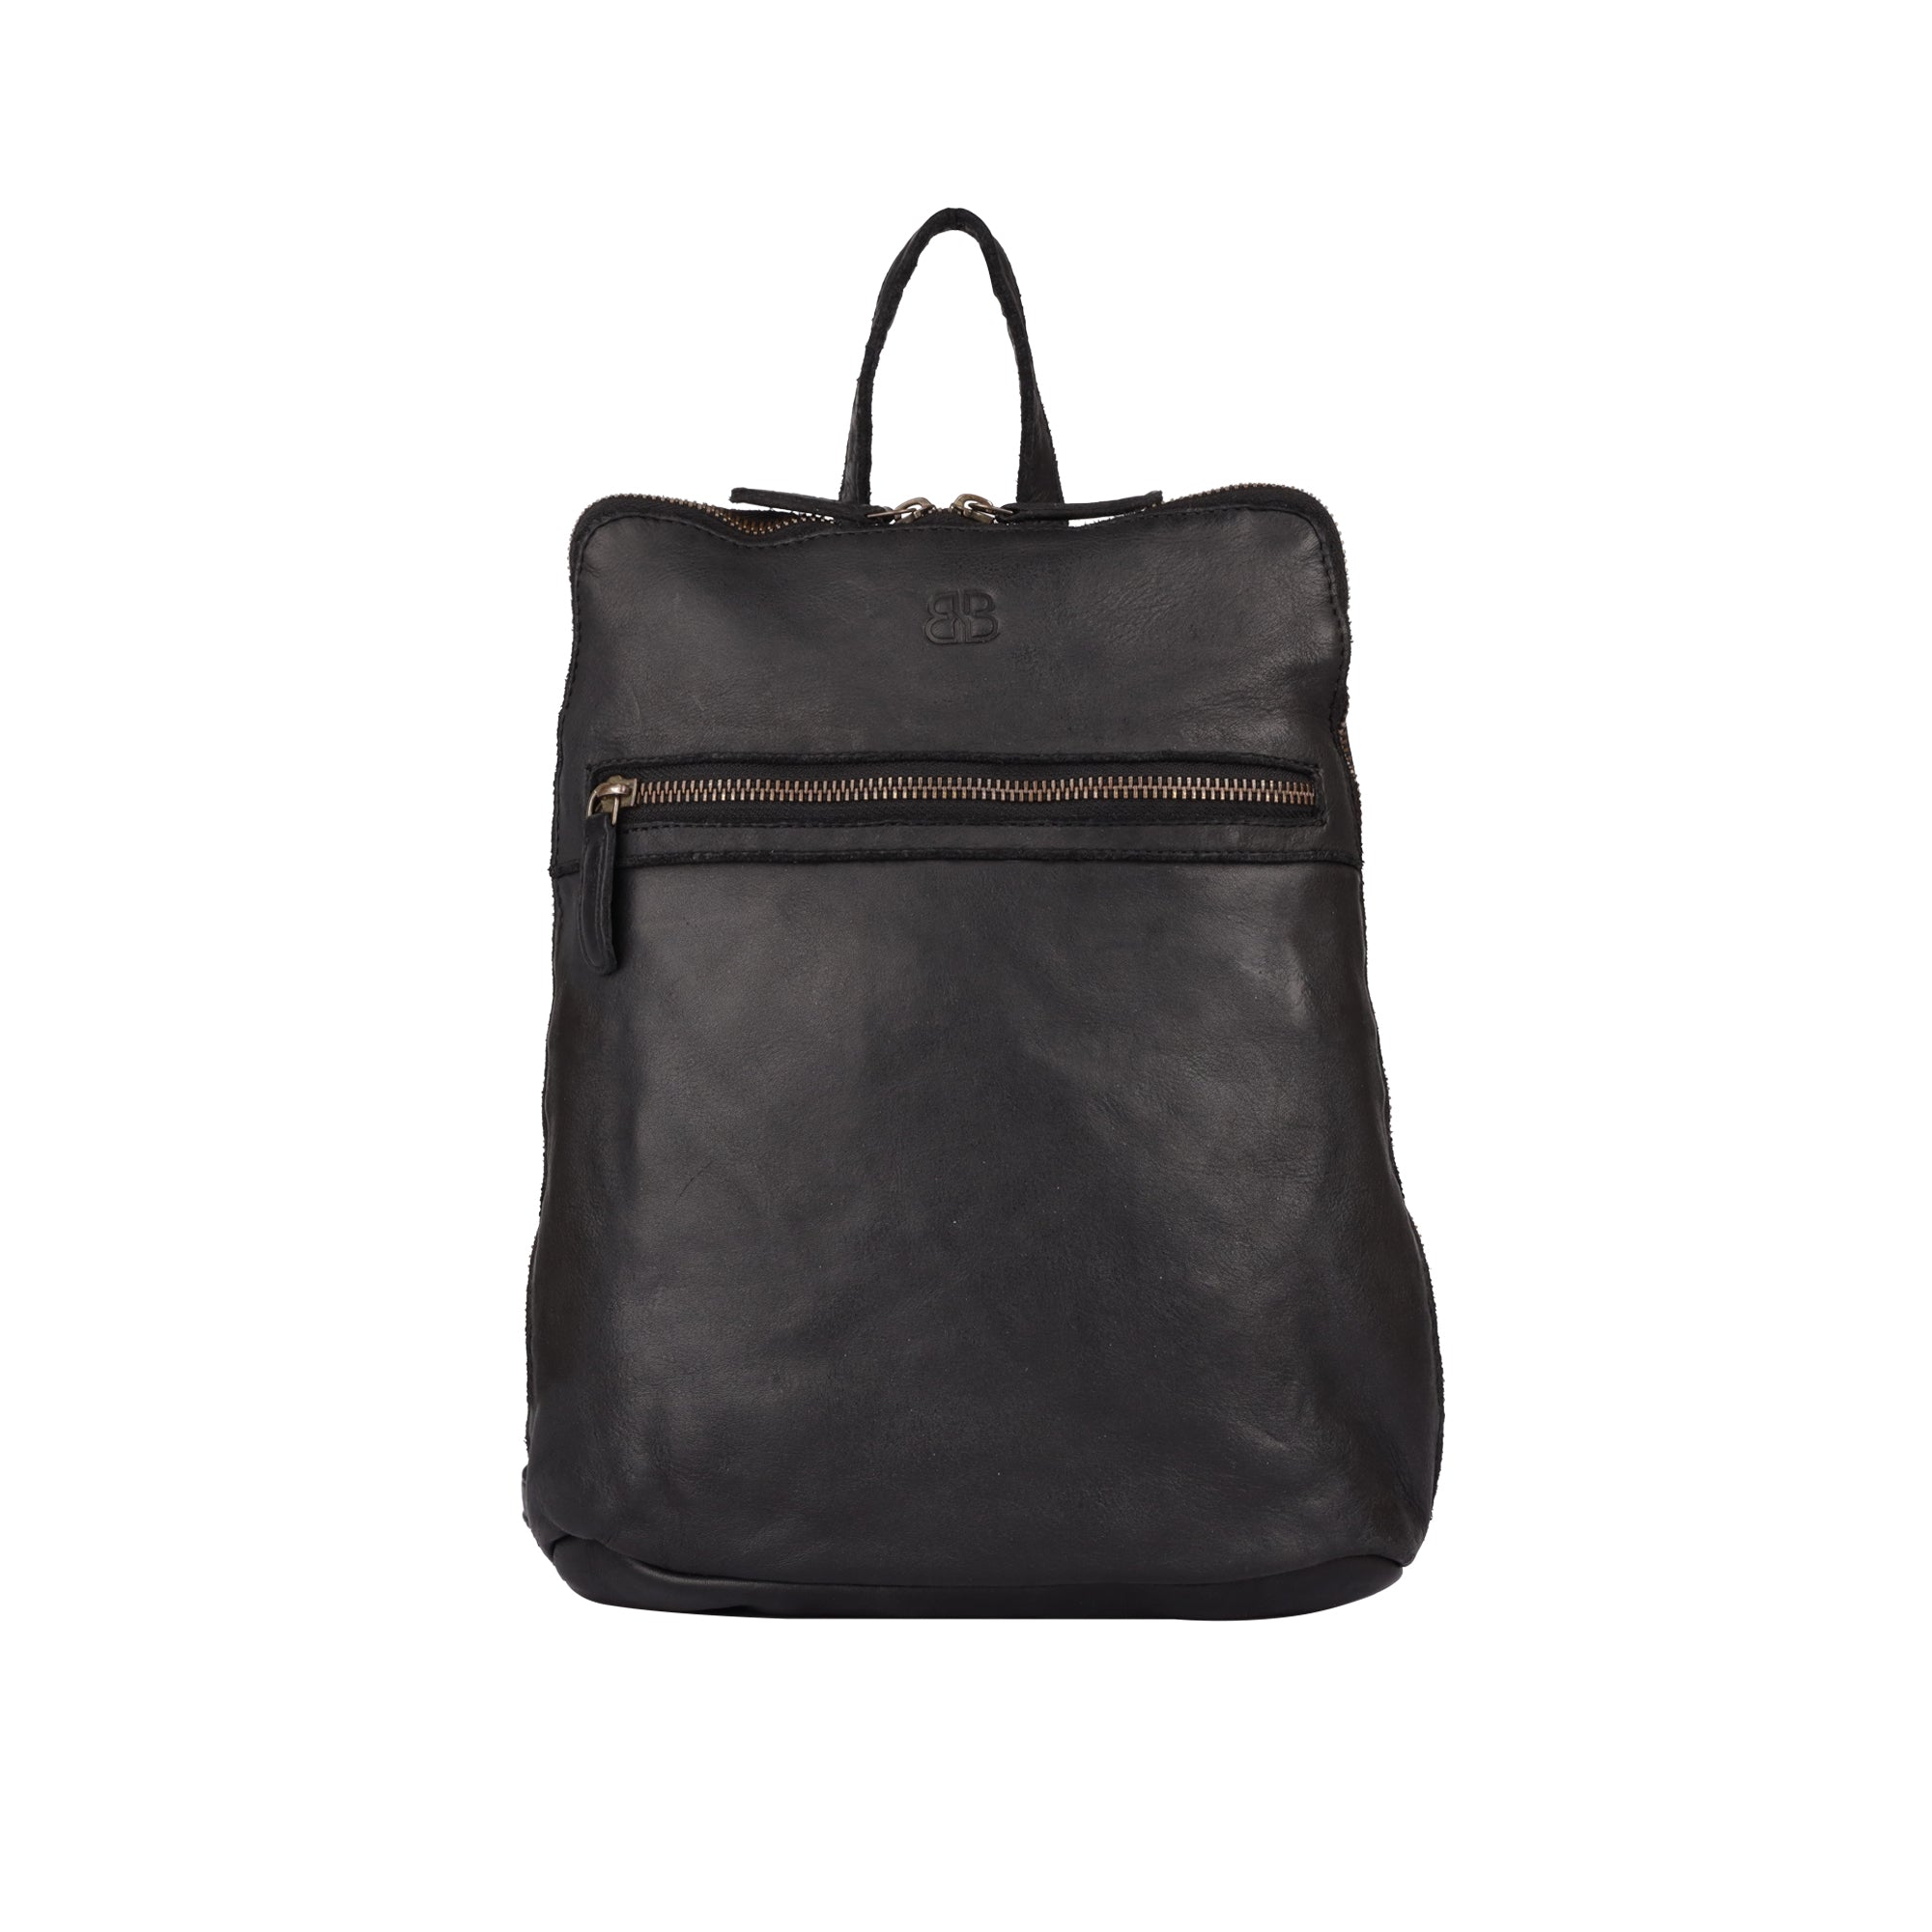 Heyenne leather backpack